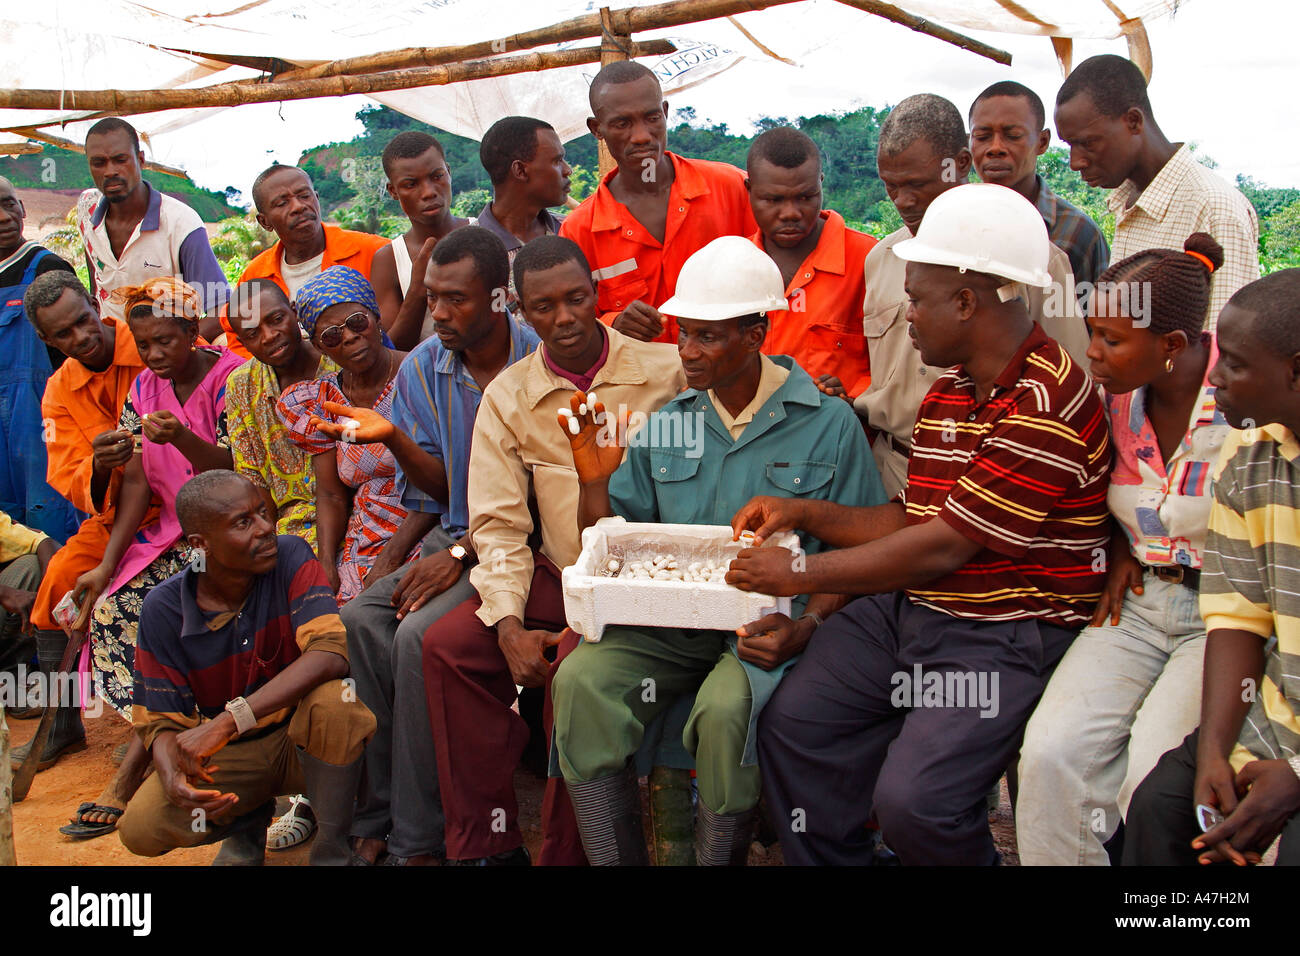 Introduzione di cooperative di agricoltori di seta di allevamento della vite senza fine, una variante di mezzi di sostentamento progetto sulla miniera d'oro, Ghana, Africa occidentale Foto Stock